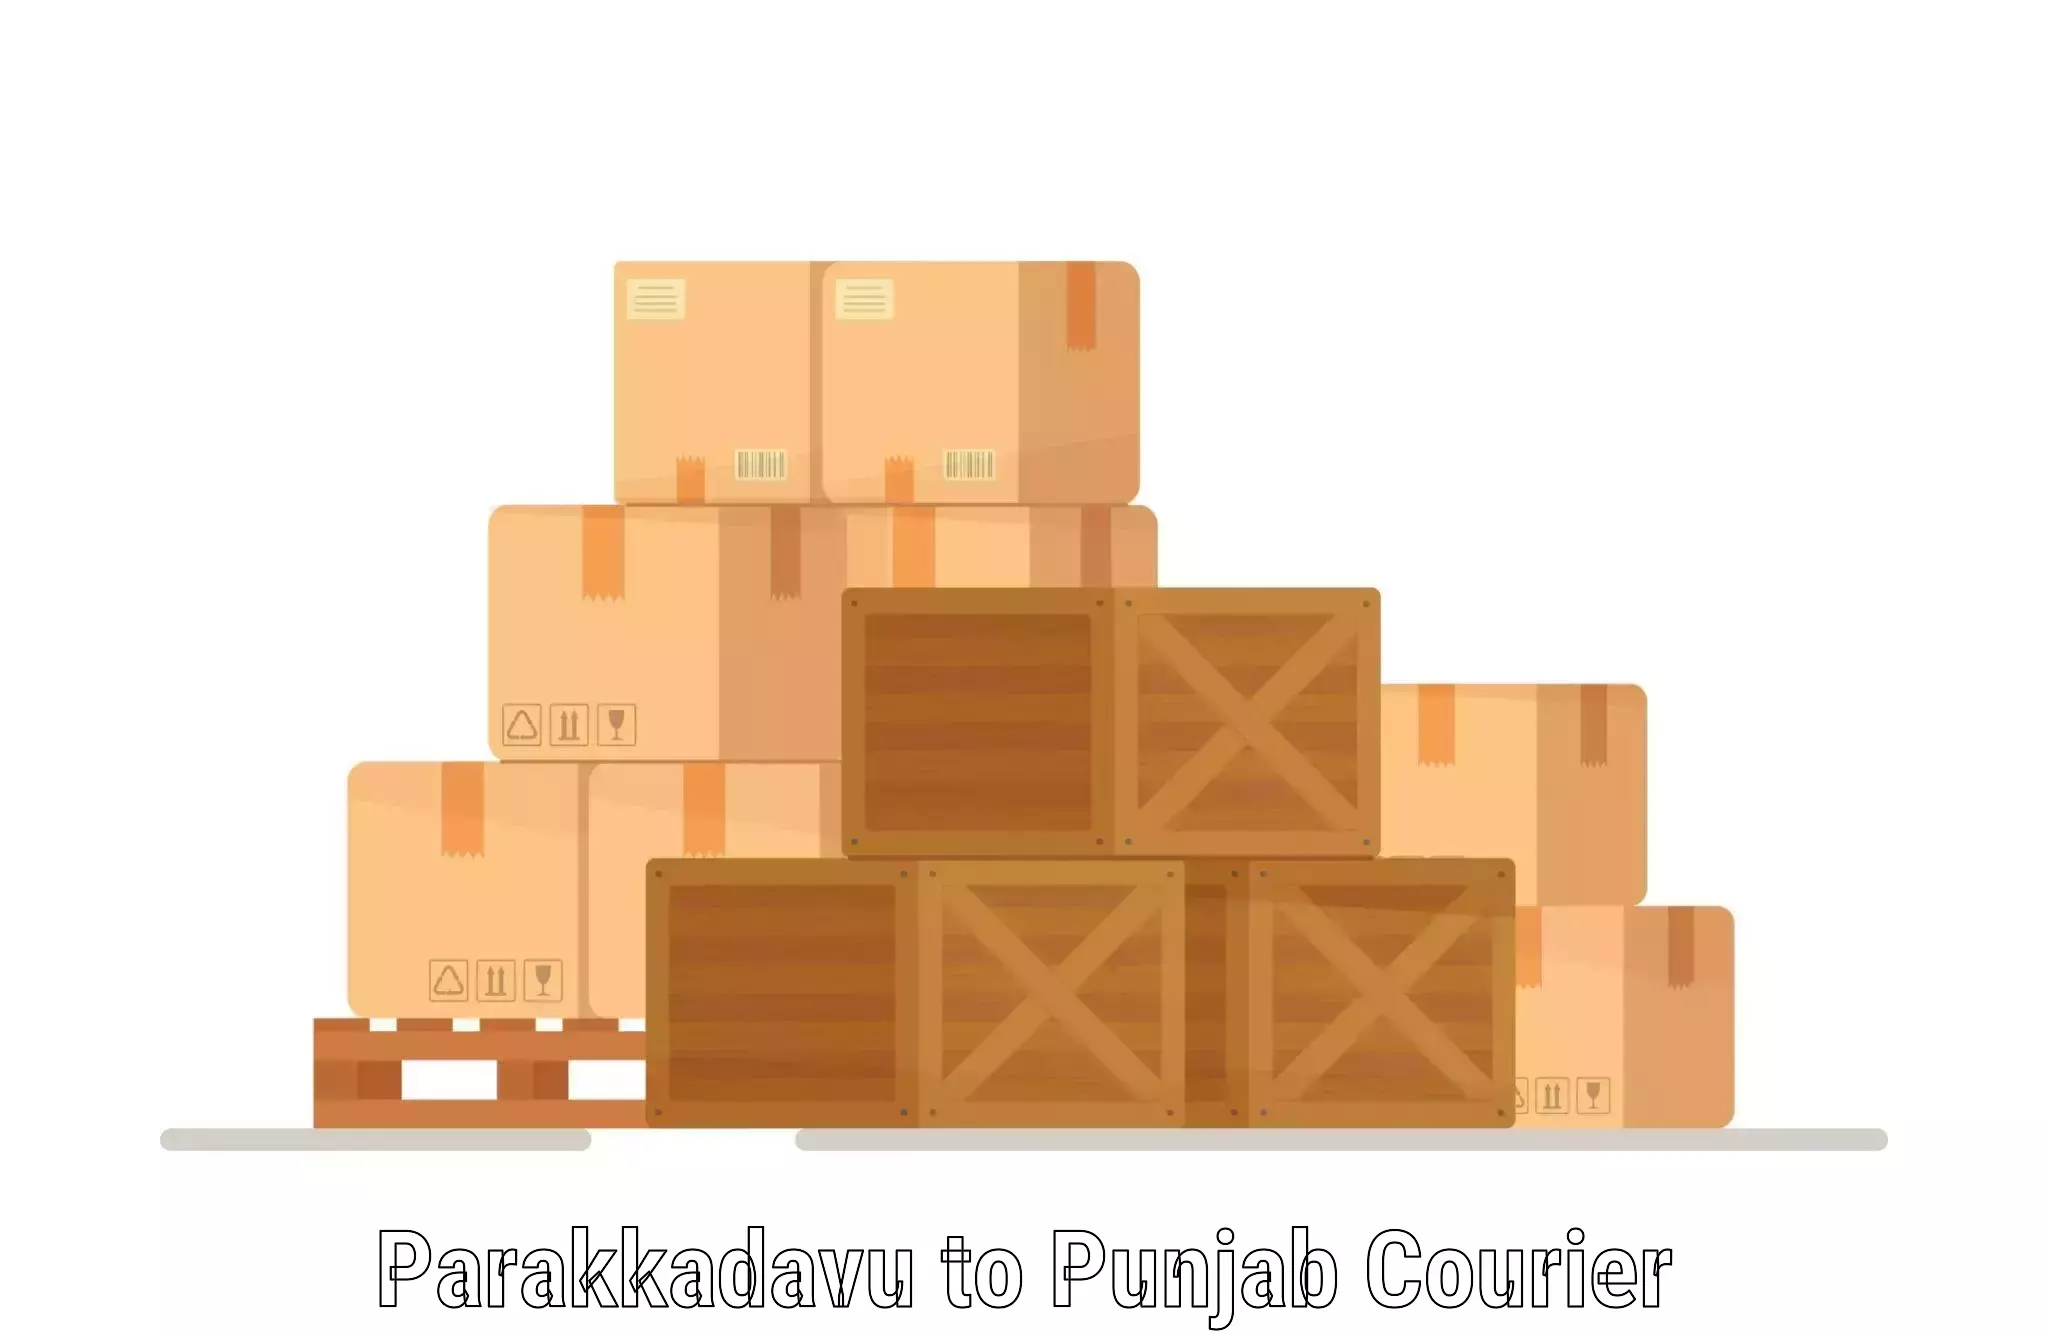 Professional courier services Parakkadavu to Rampura Phul